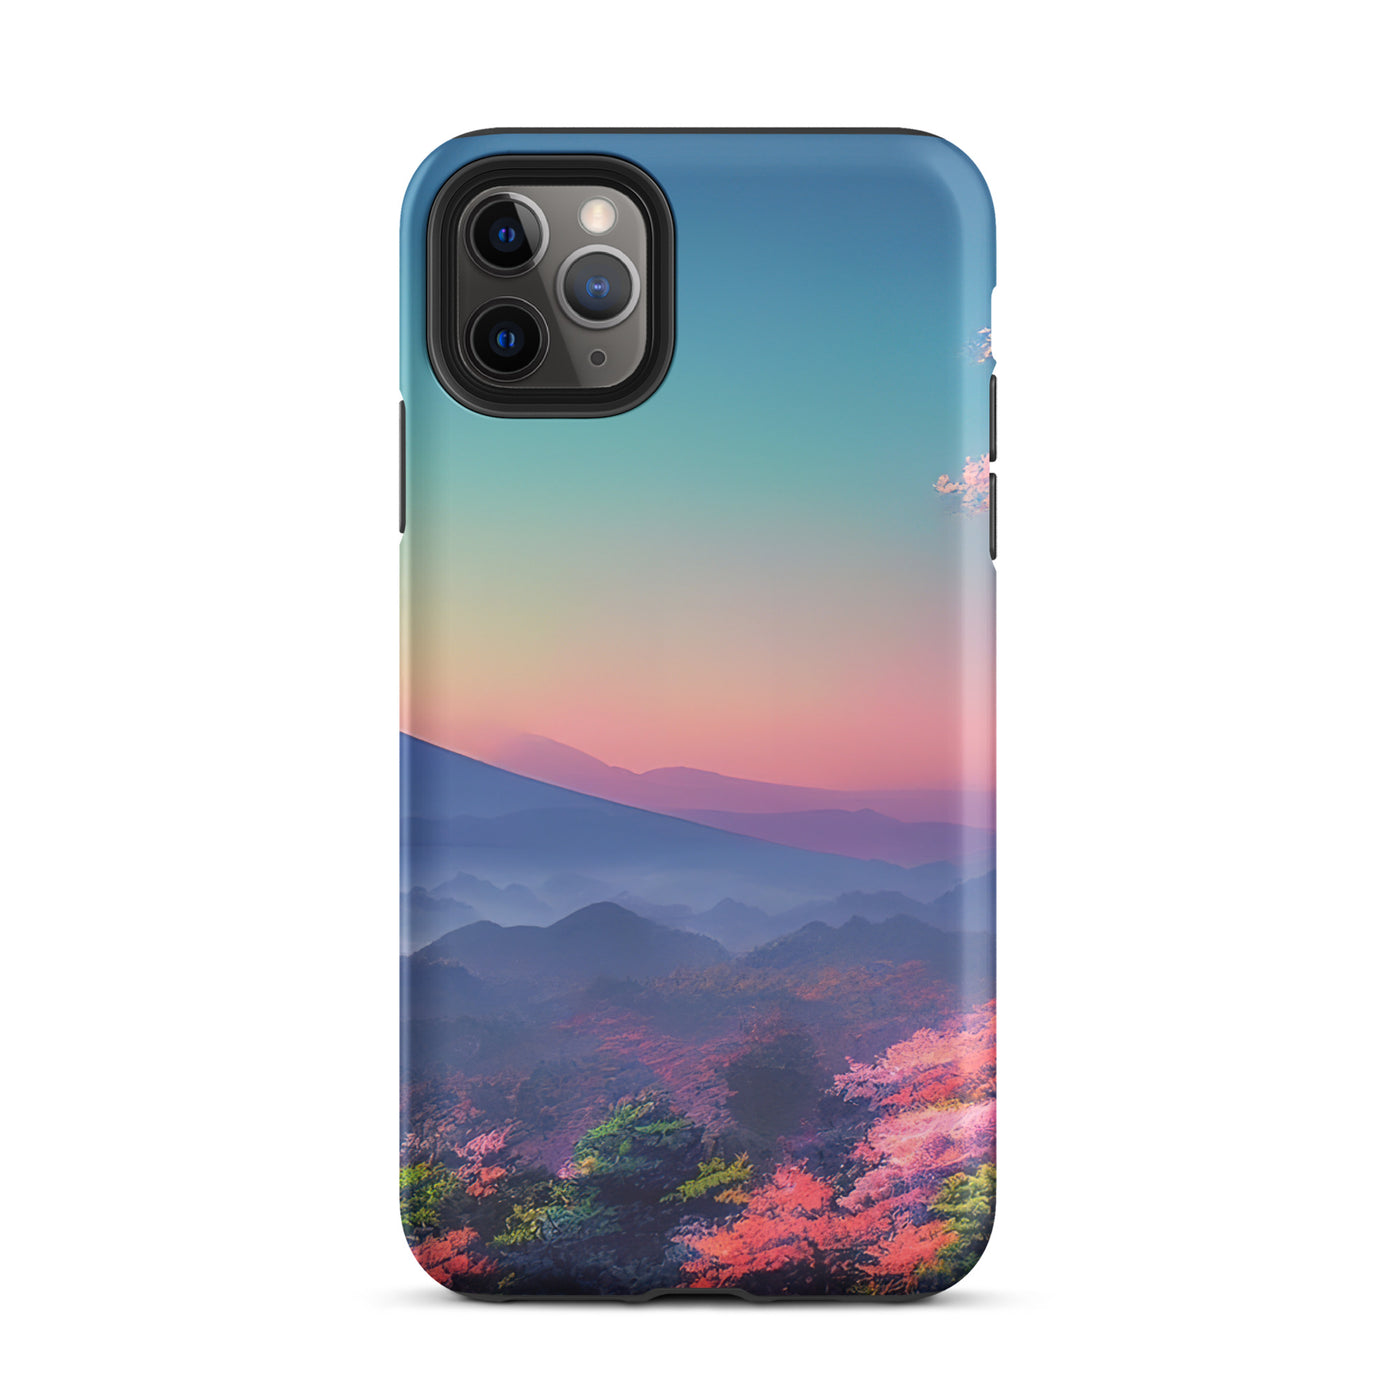 Berg und Wald mit pinken Bäumen - Landschaftsmalerei - iPhone Schutzhülle (robust) berge xxx iPhone 11 Pro Max